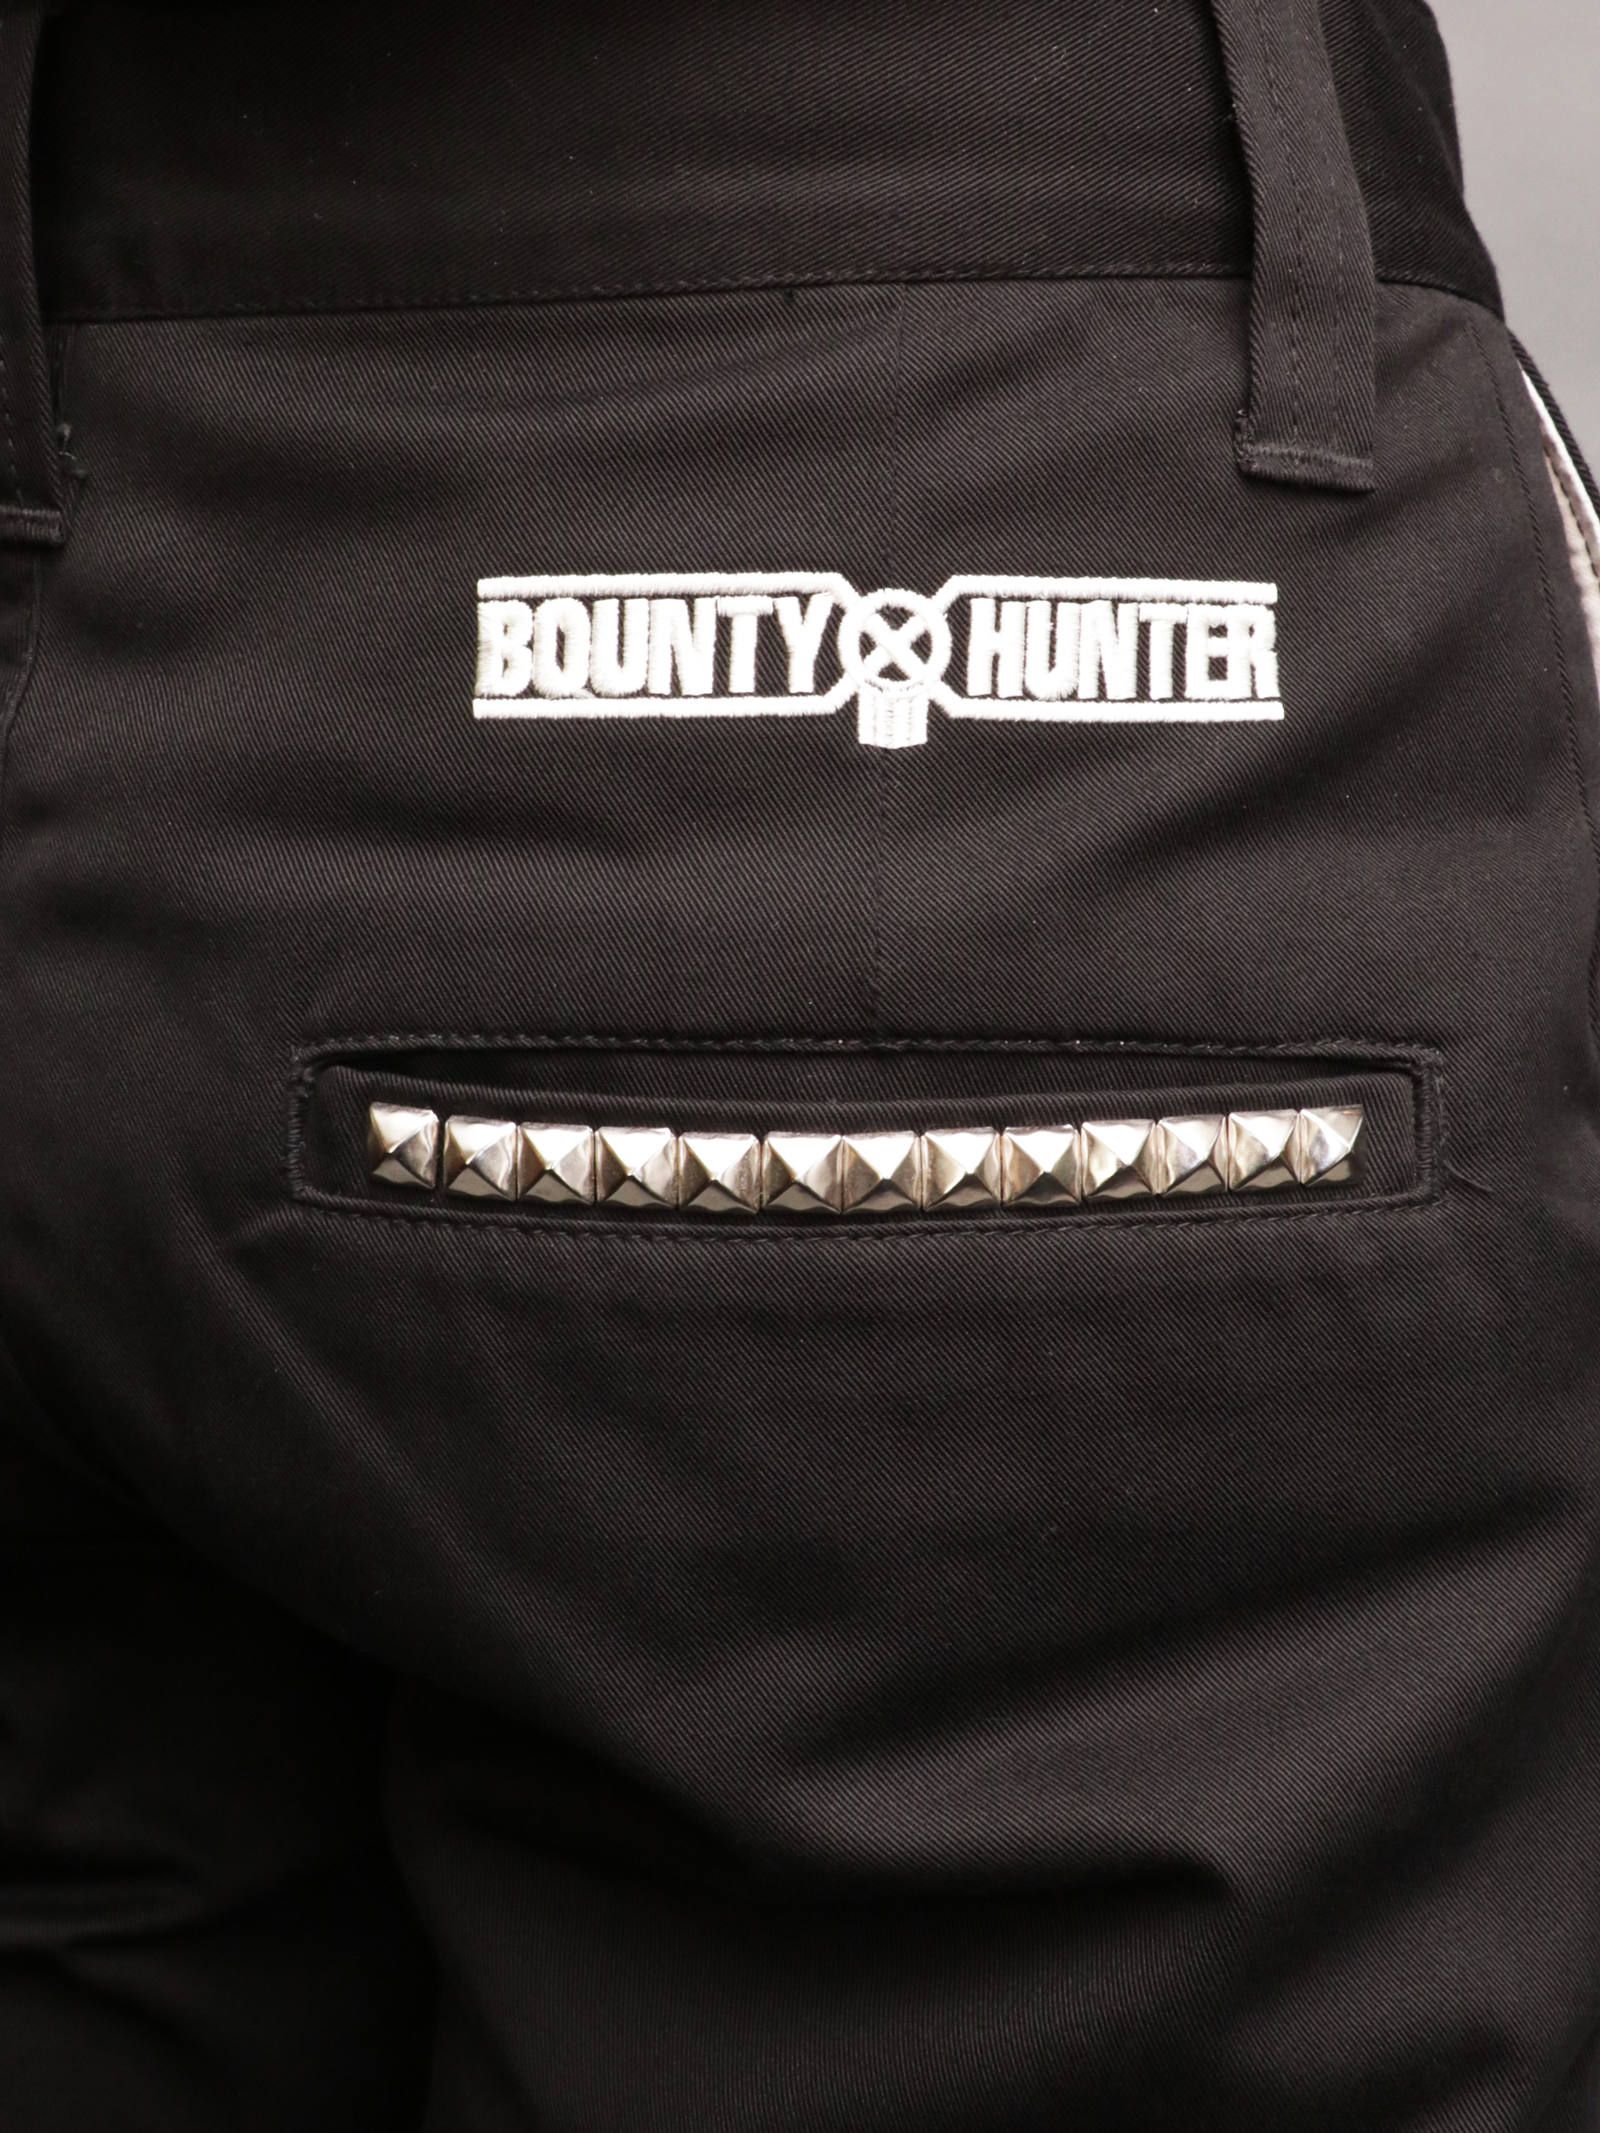 BOUNTY HUNTER - スタッズパンツ (ブラック) / Studs Pants (BLACK) モデル 身長170cm、体重56kg 着用  M | SKANDA